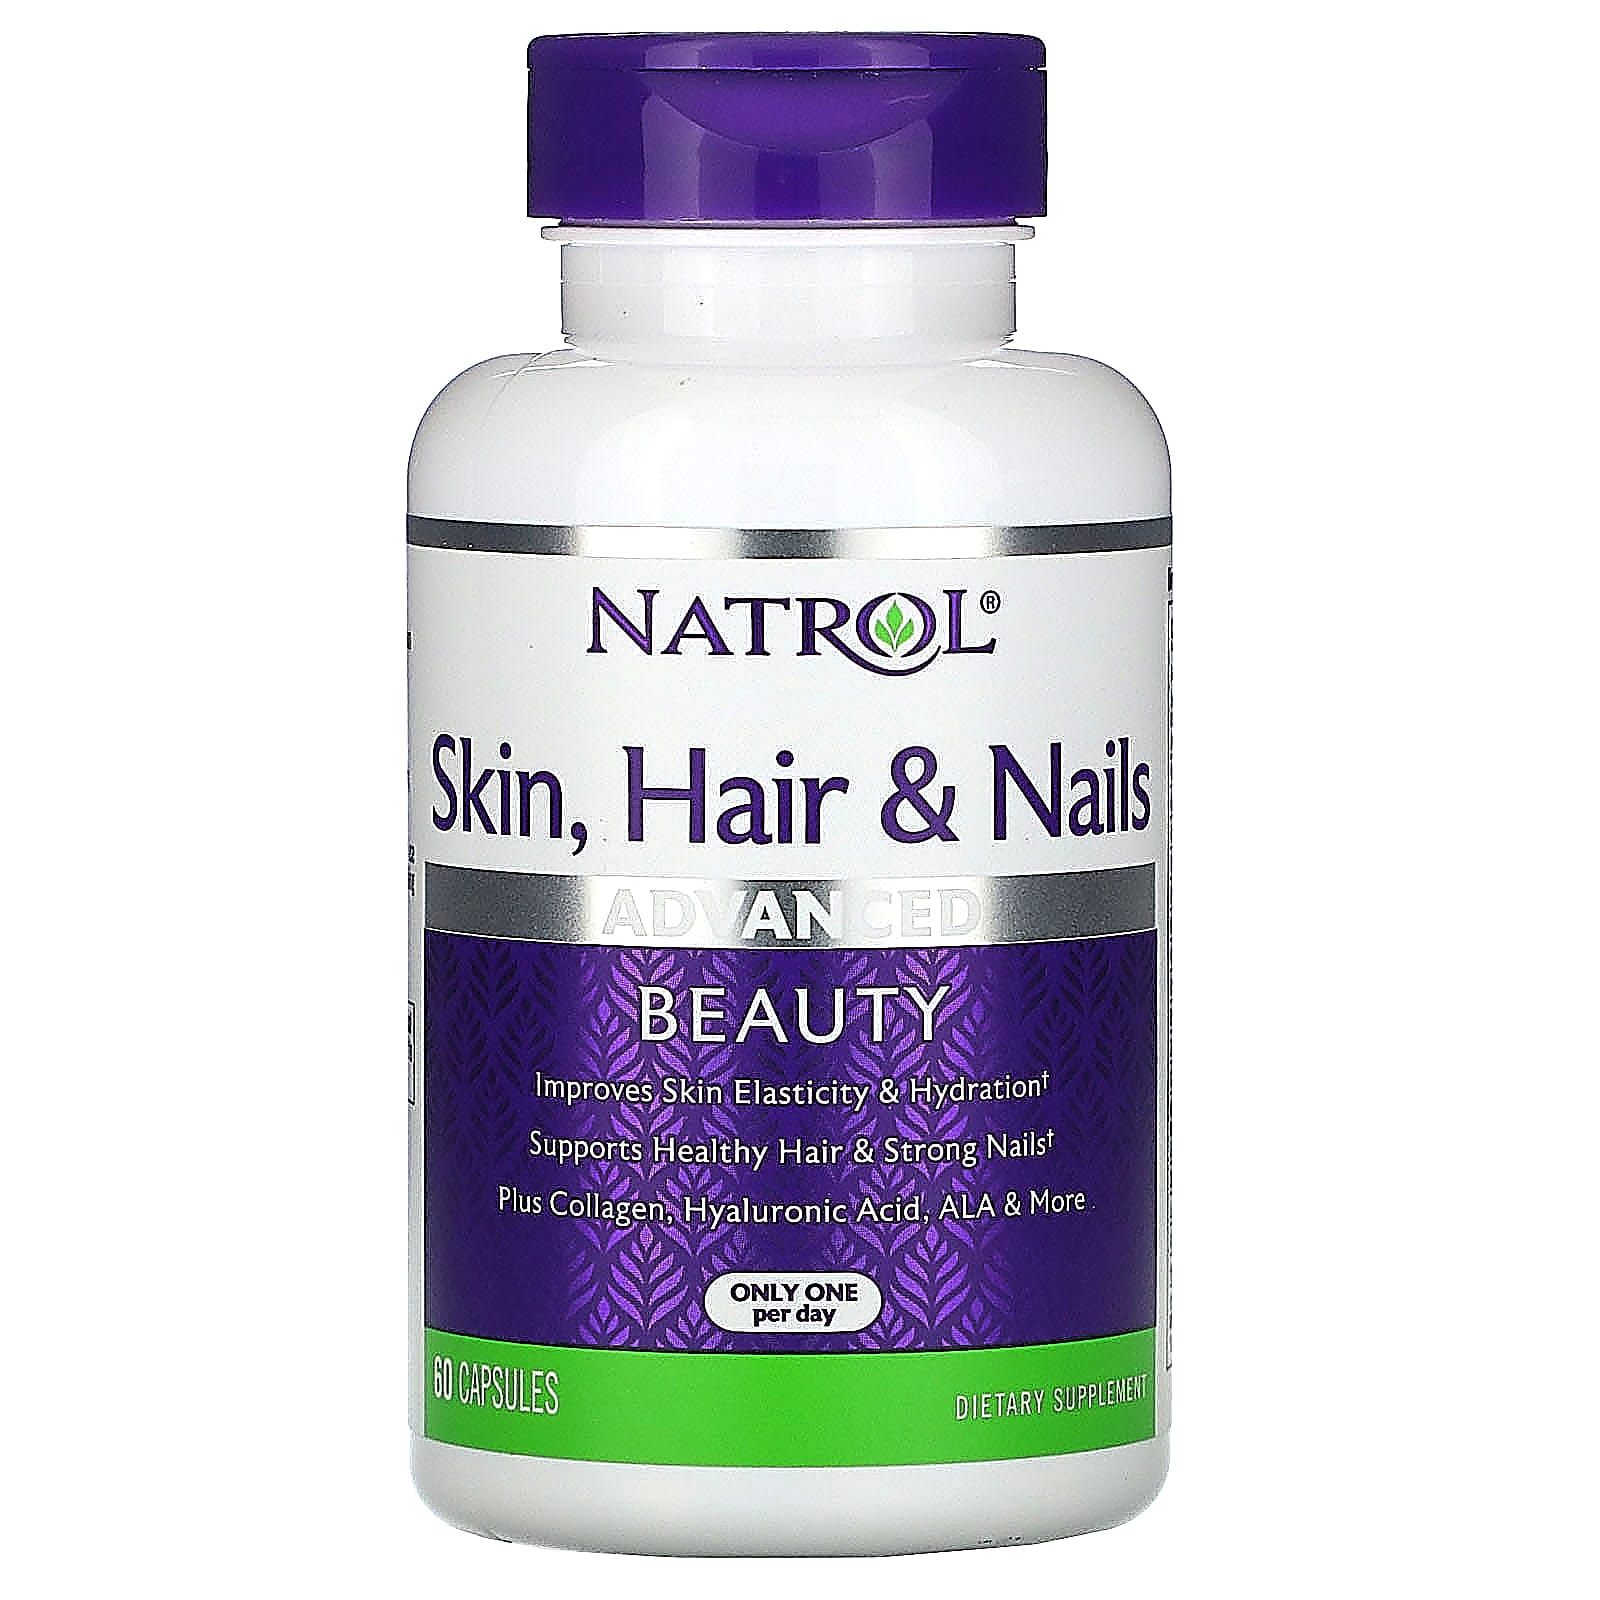 Natrol hair skin and nails women's multivitamin capsules - 60 capsules